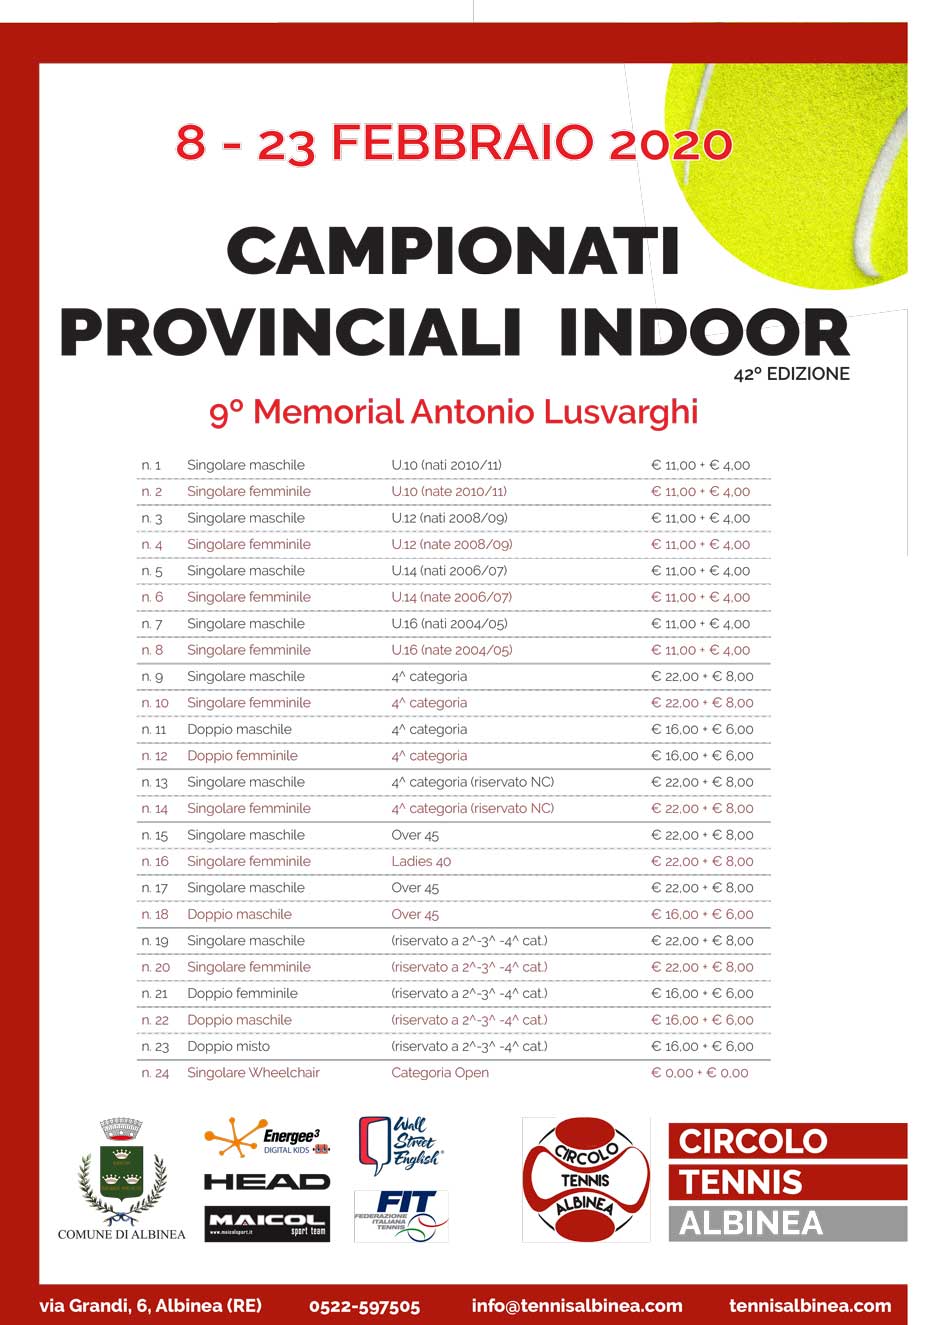 CAMPIONATI provinciali indoor 2020